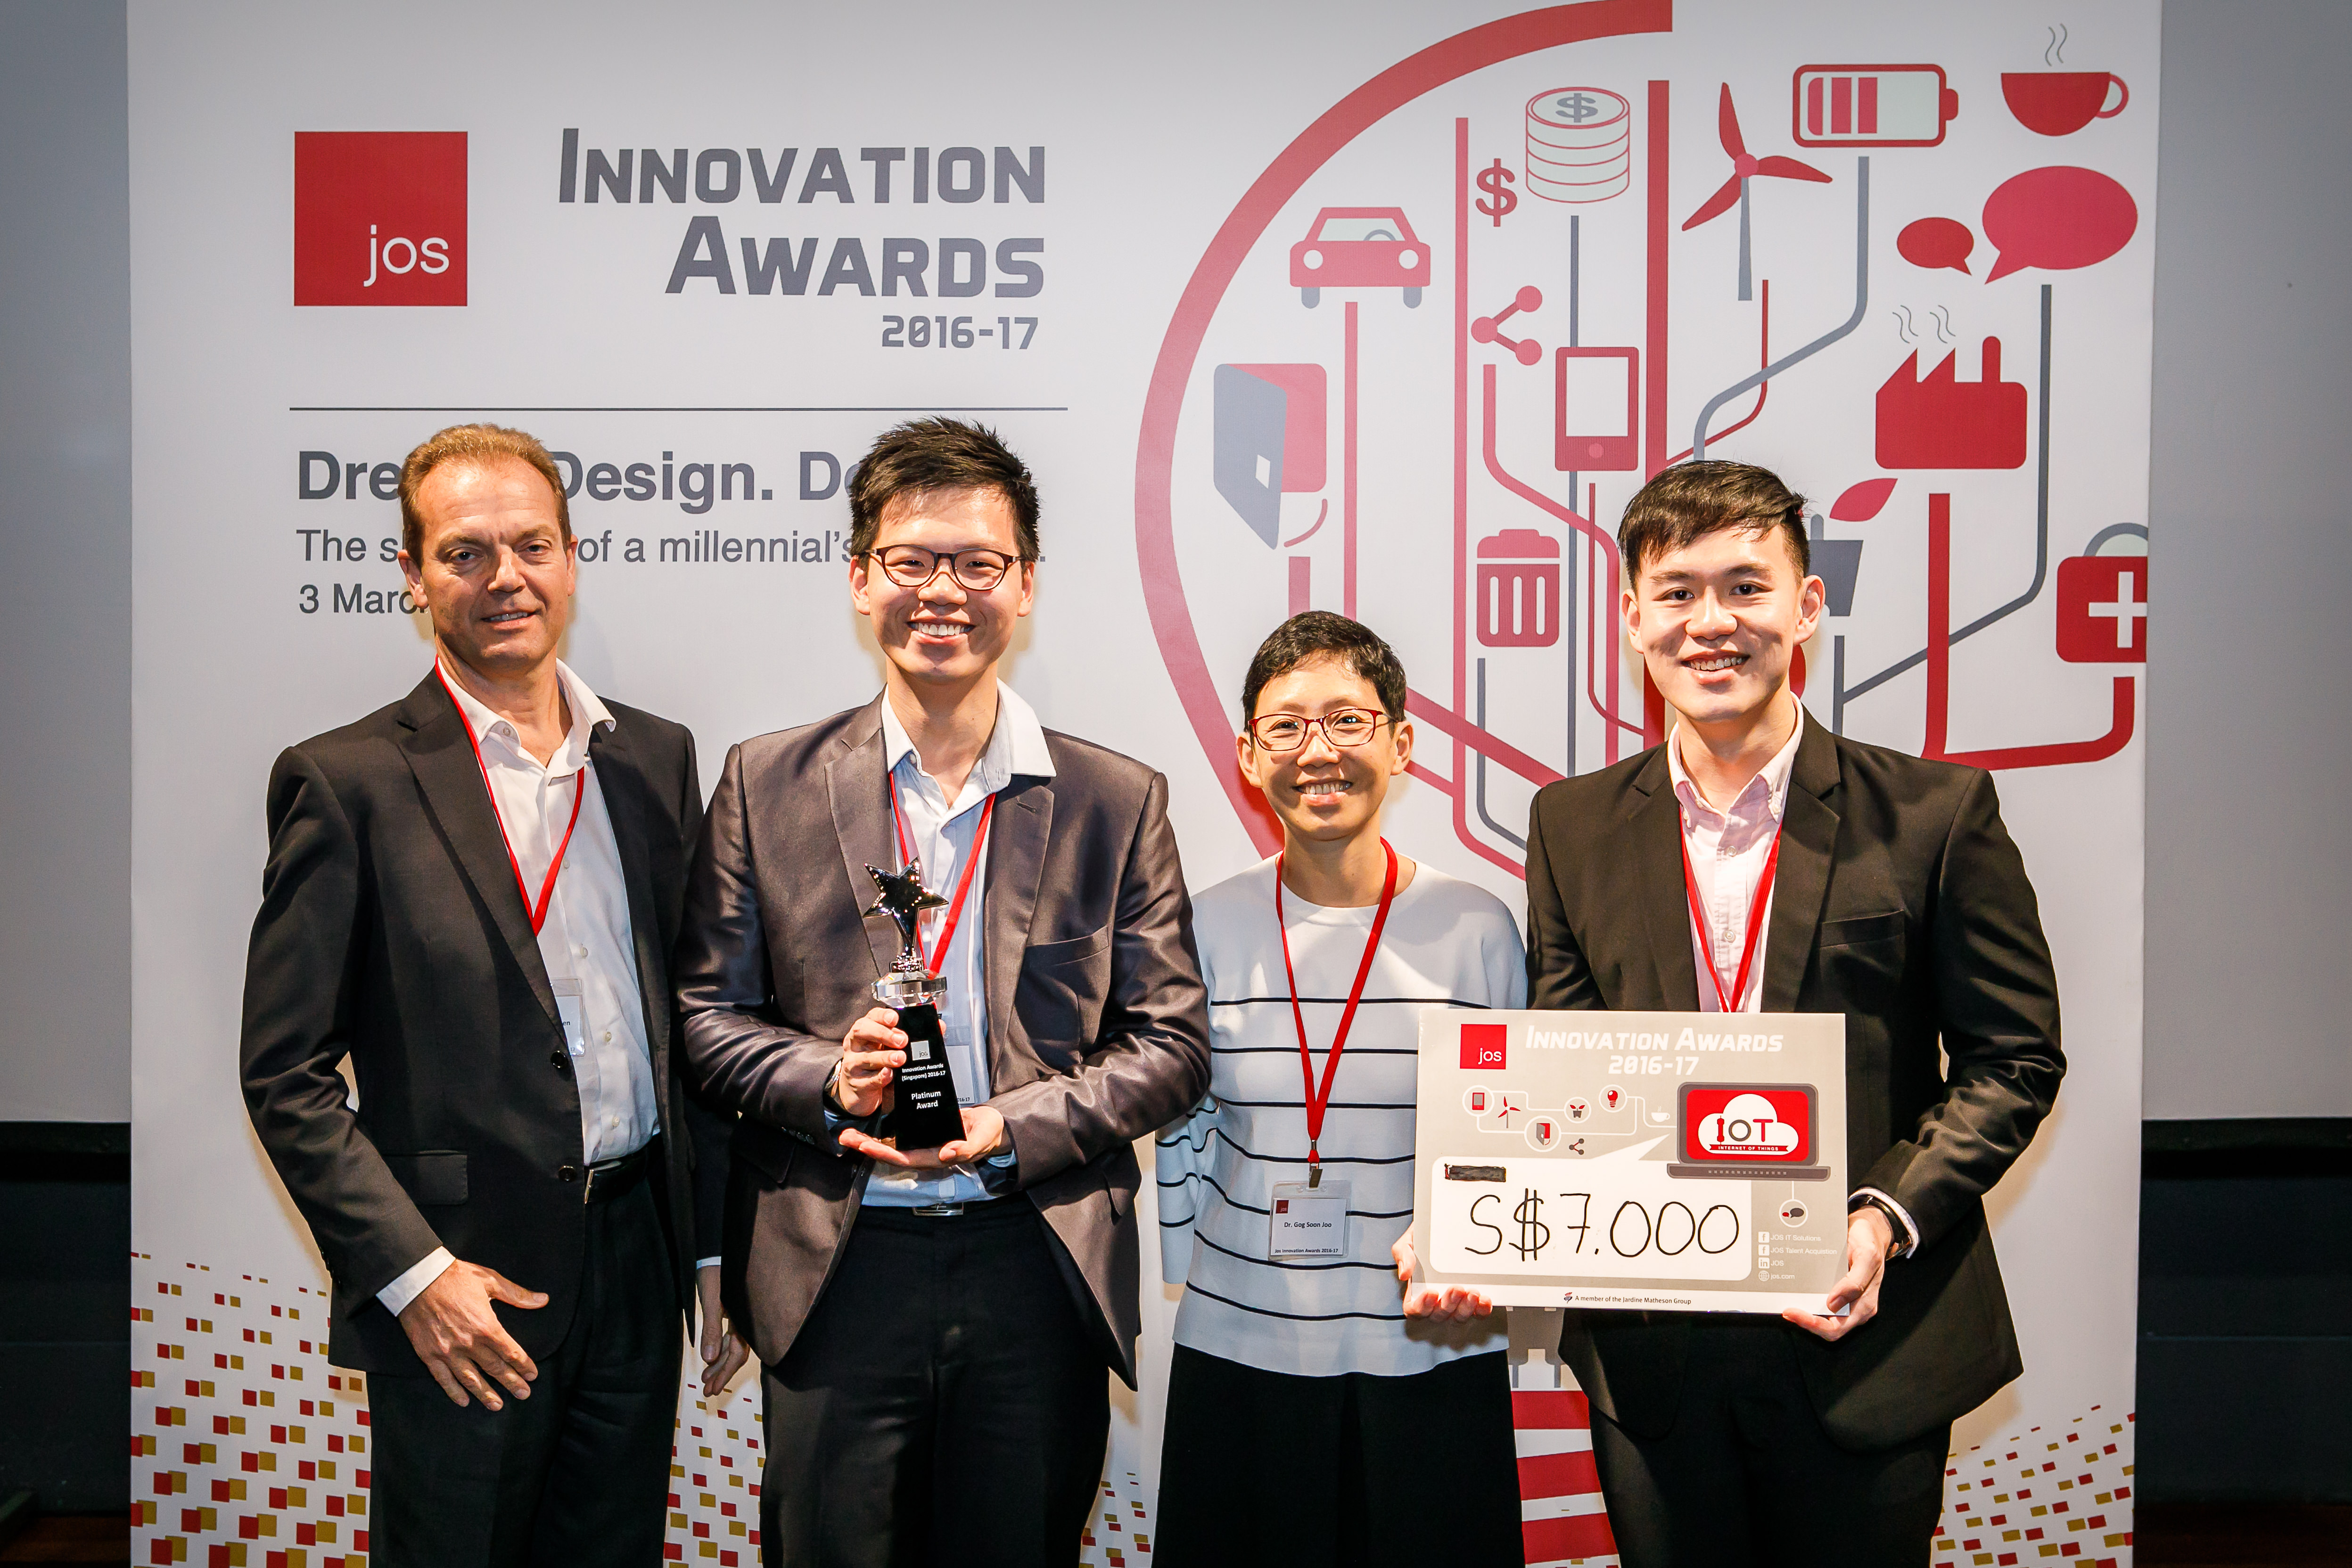 champion team cartshare Innovation Awards 2016-17